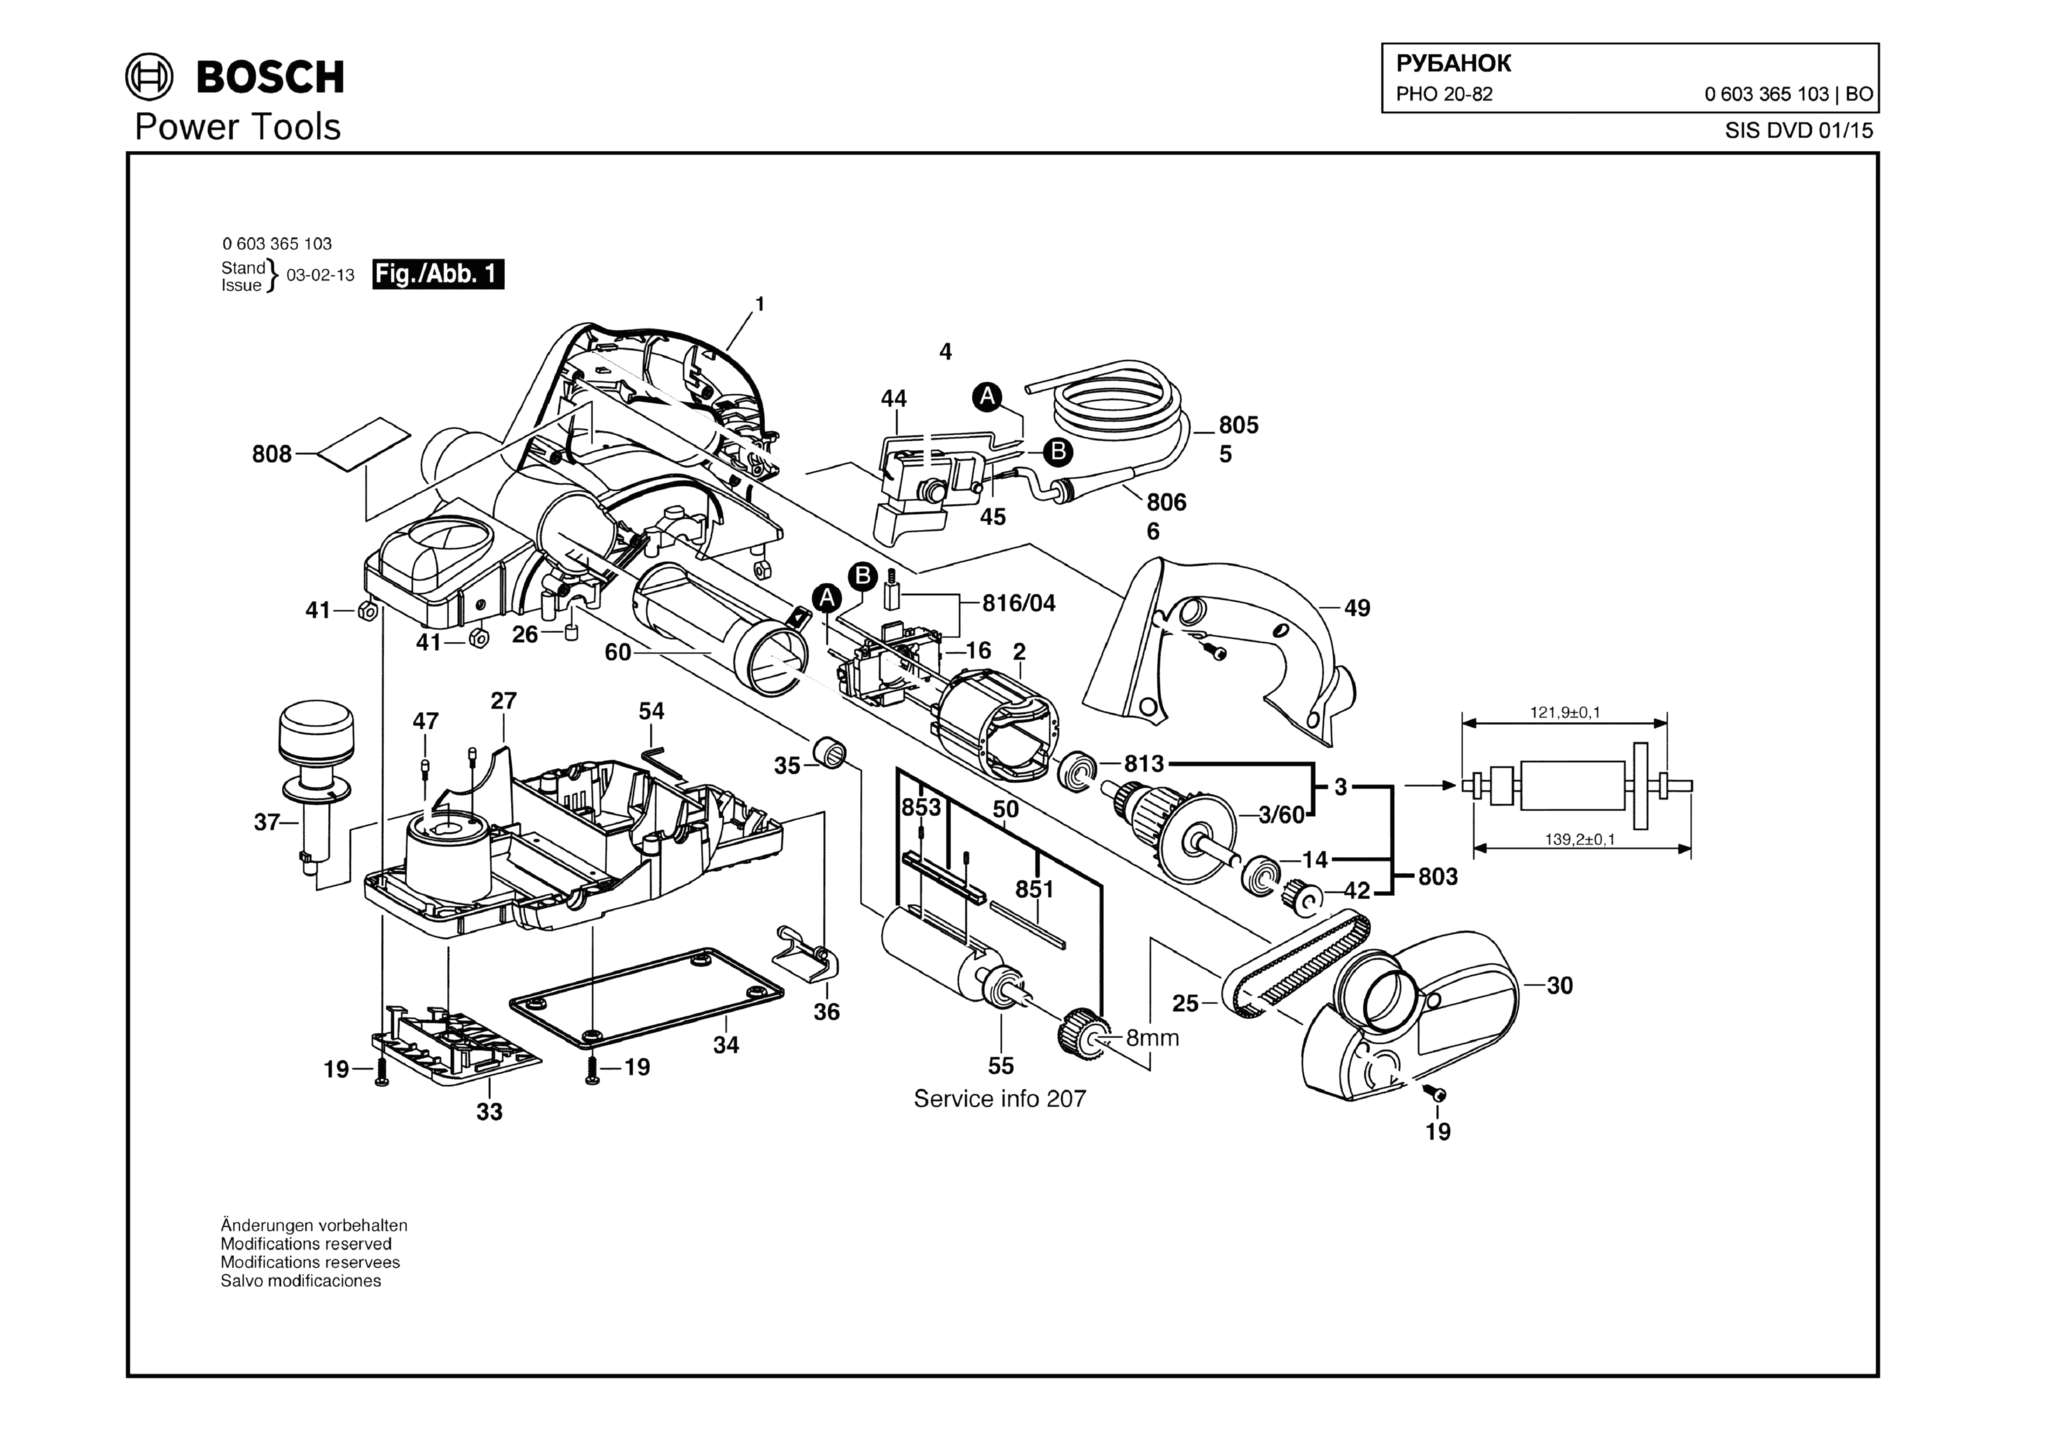 Запчасти, схема и деталировка Bosch PHO 20-82 (ТИП 0603365103)